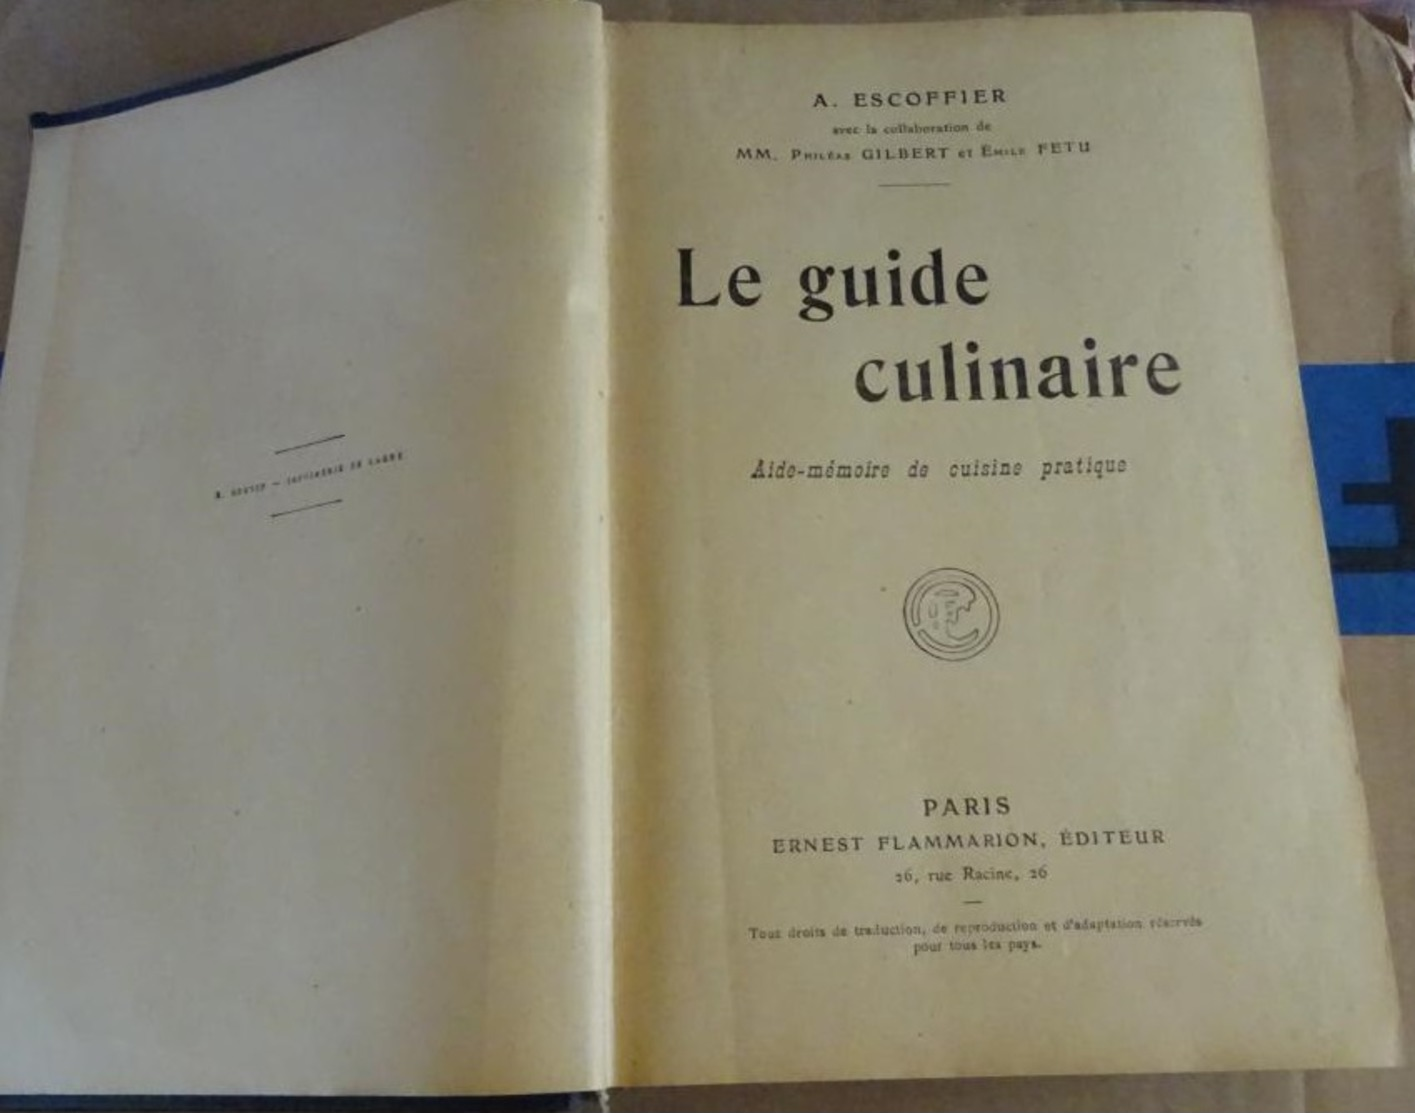 Le Guide Culinaire A Escoffier 1921 - Escoffier Gilbert Fetu - Aide Mémoire De Cuisine Pratique - Gastronomie